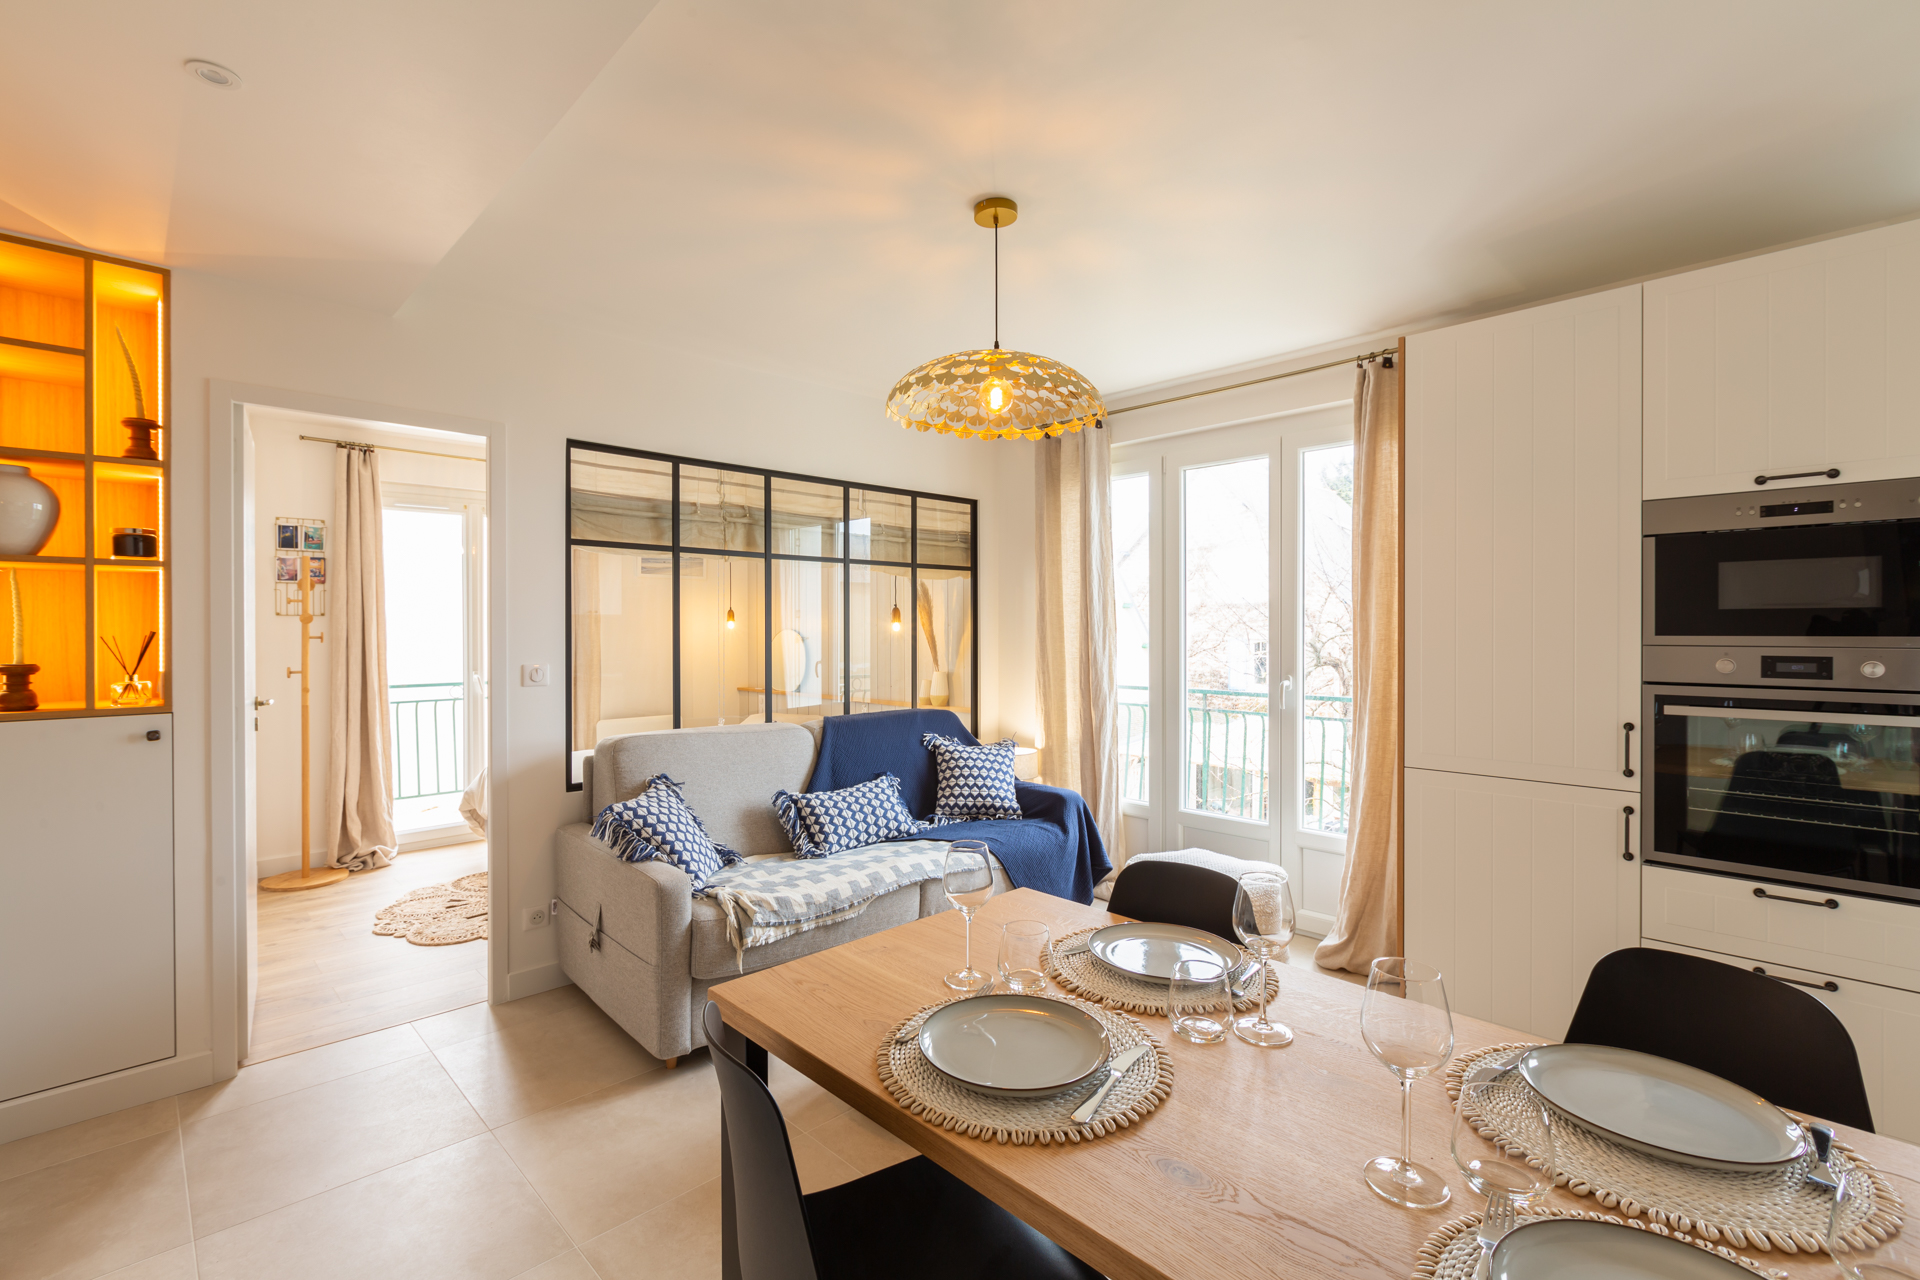 Rénovation d'un appartement à Pléneuf-Val-André (22) - pièce lumineuse avec parquet chaleureux